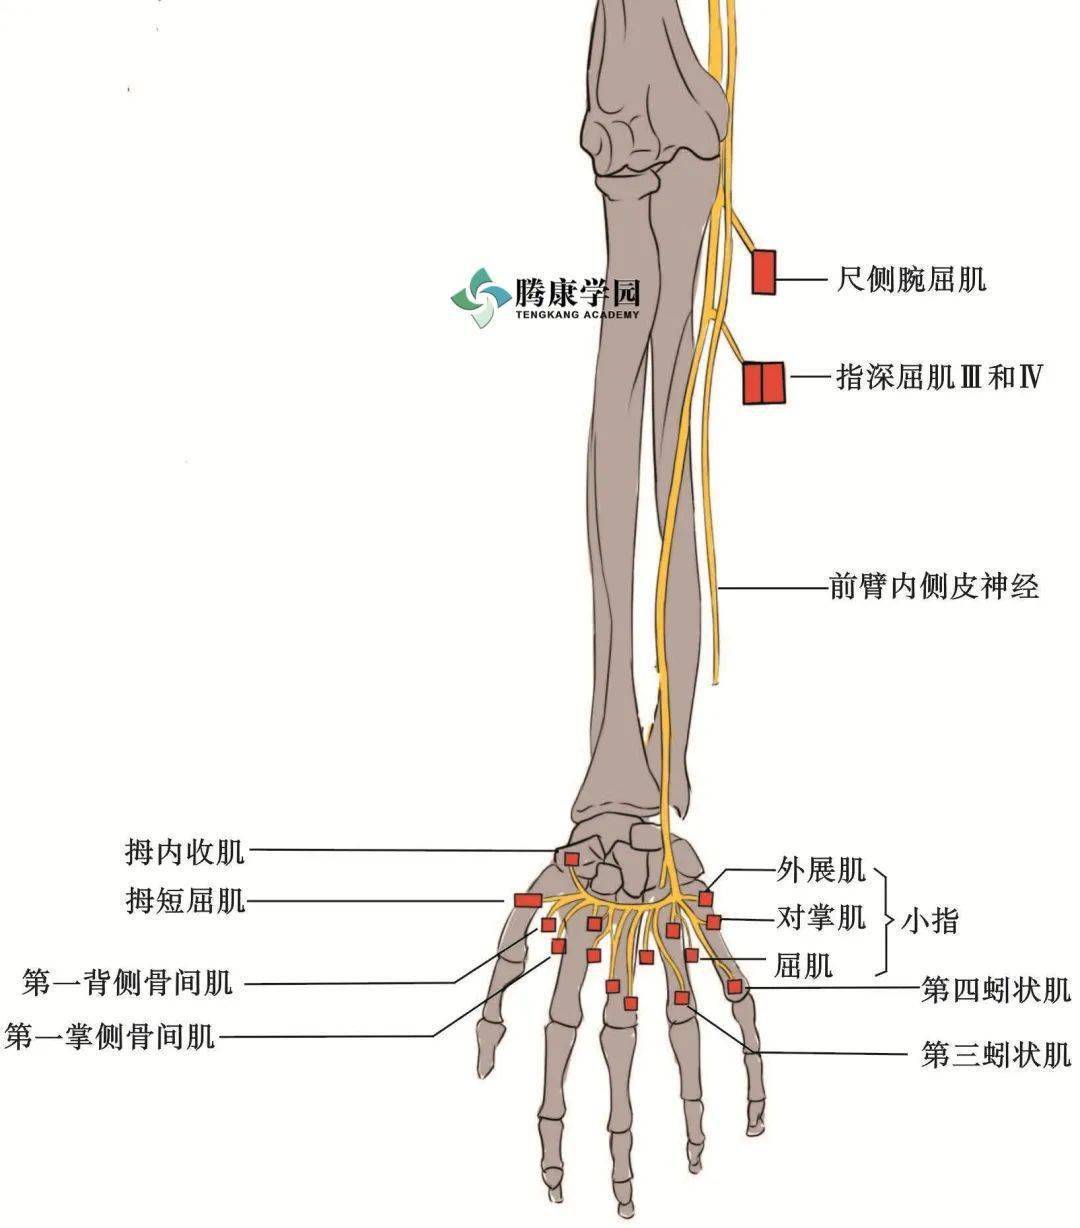 手部:小鱼际肌(小指对掌肌,小指展肌和小指短屈肌),蚓状肌(内侧两块)